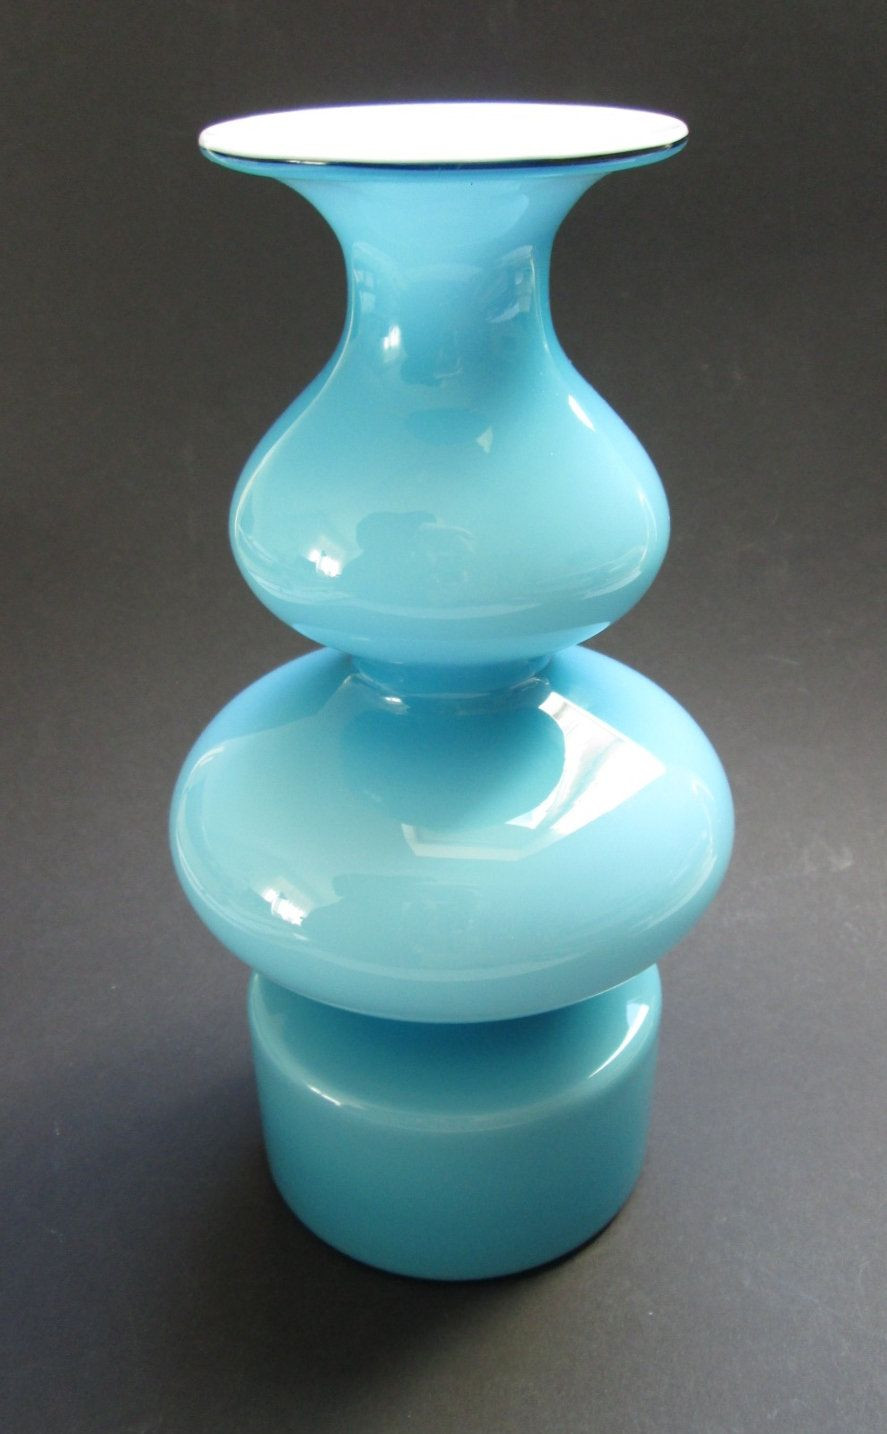 rectangular ceramic vase of blue and opal white carnaby danish vase designed 1968 by per inside blue and opal white carnaby danish vase designed 1968 by per la¼tken for holmegaard glasva¦rk a s denmark by scaldesign on etsy